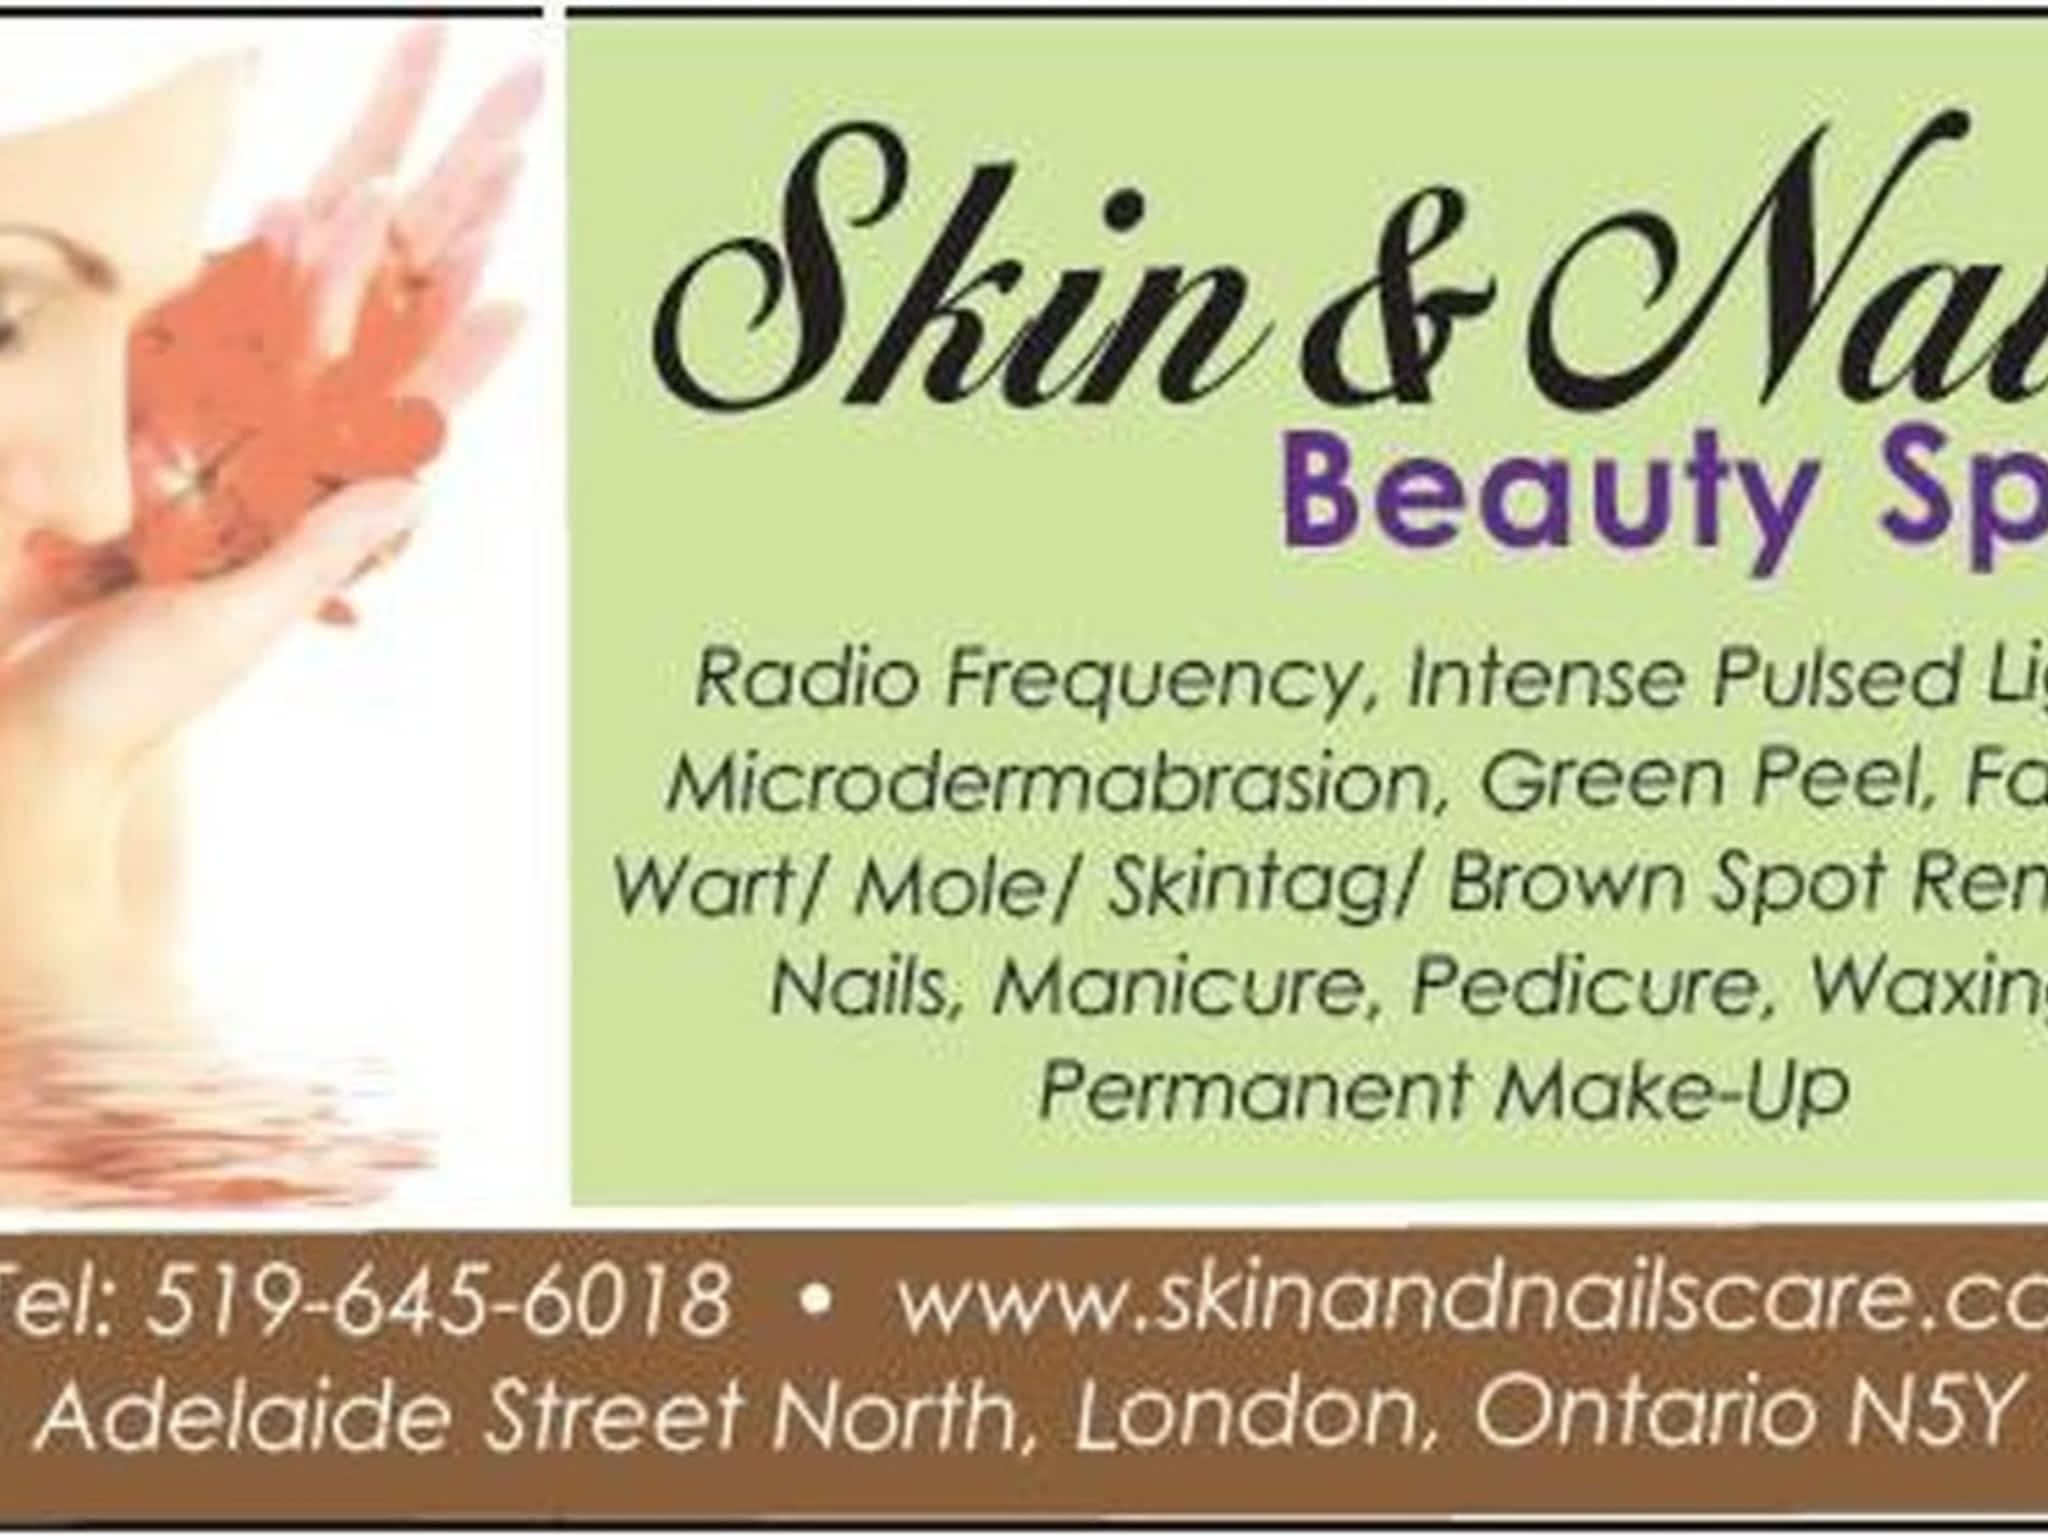 photo Skin and Nail beauty Spa Inc